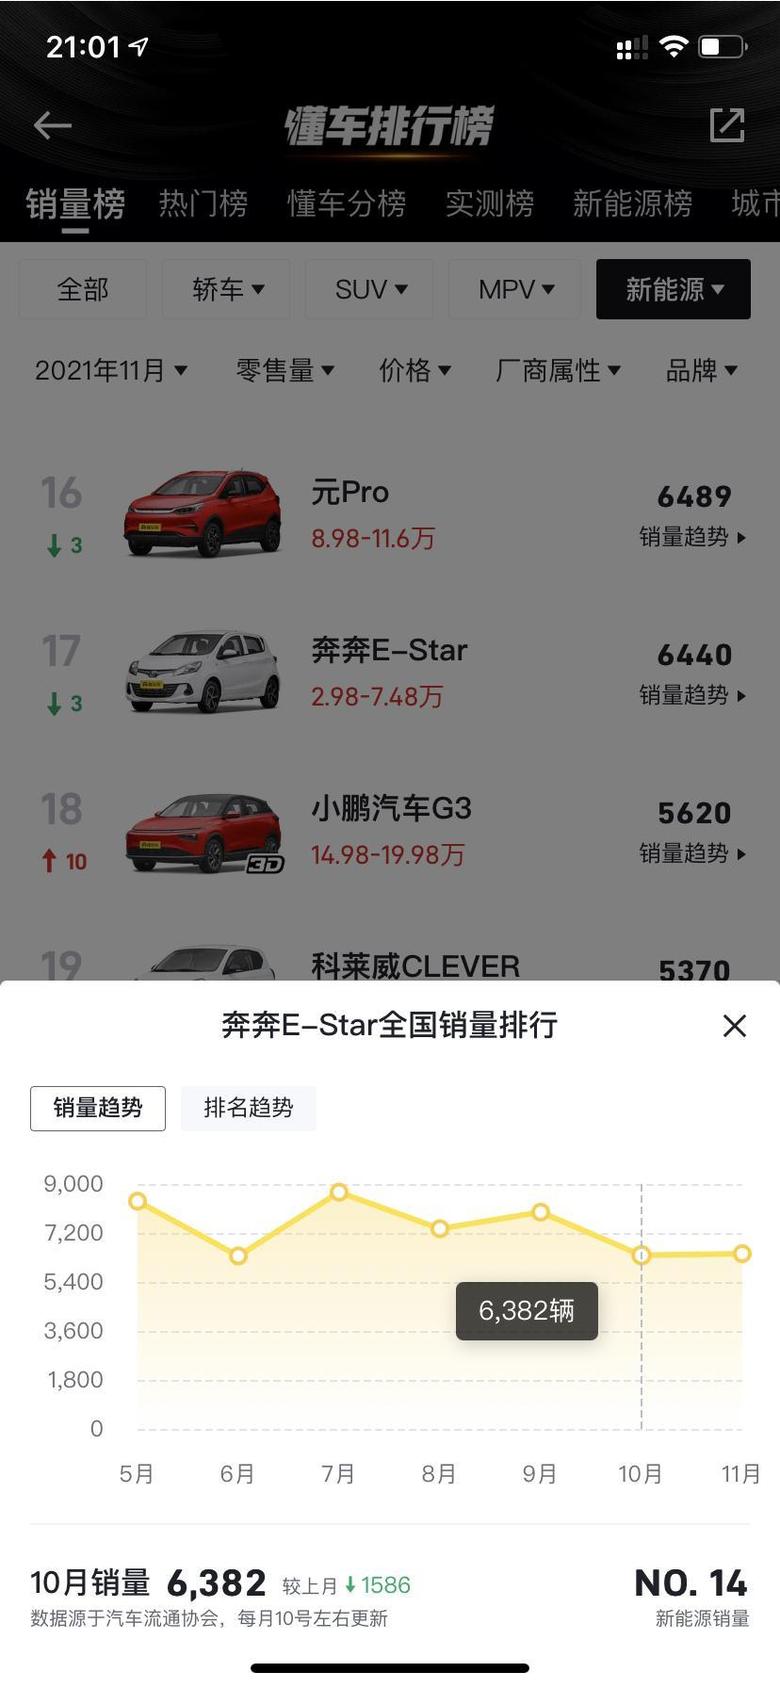 奔奔e star 奔奔11月份的销量比10月份还多，不知道这些车，是不是都是加价提的，原价的提得有多少？